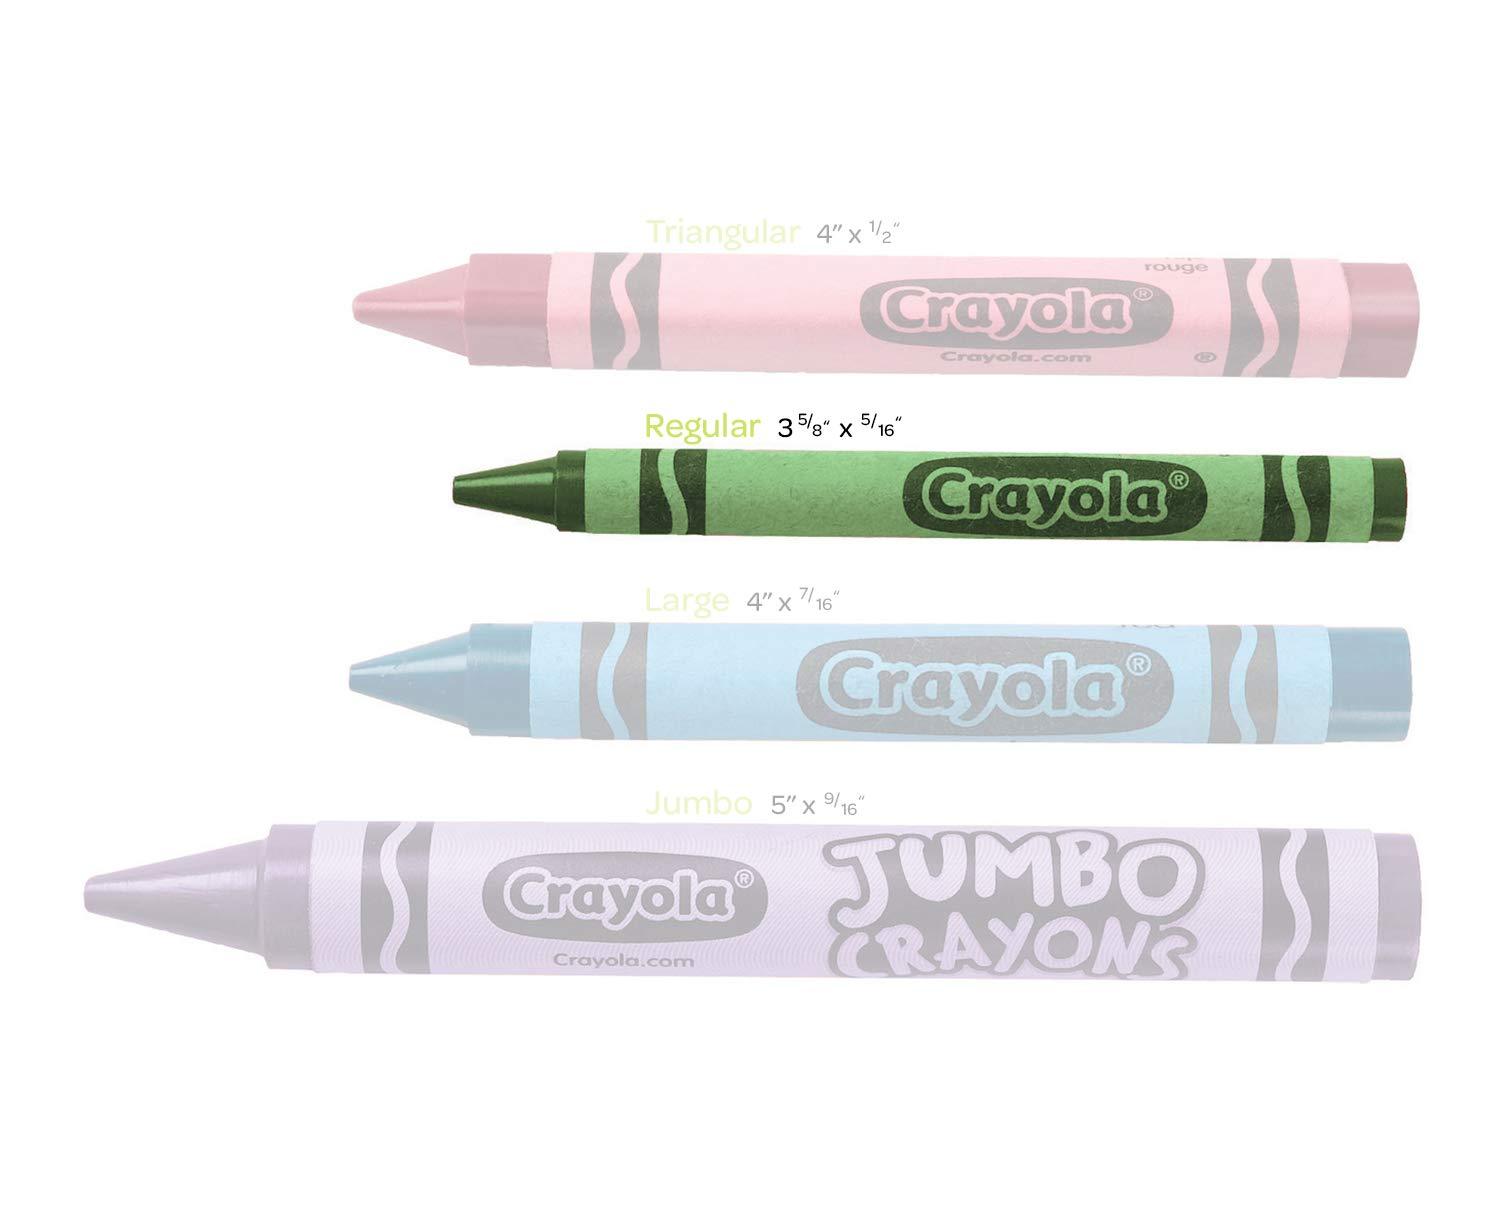 Crayola Crayons 24 Boxes, 24 Crayons per Box - image 4 of 7